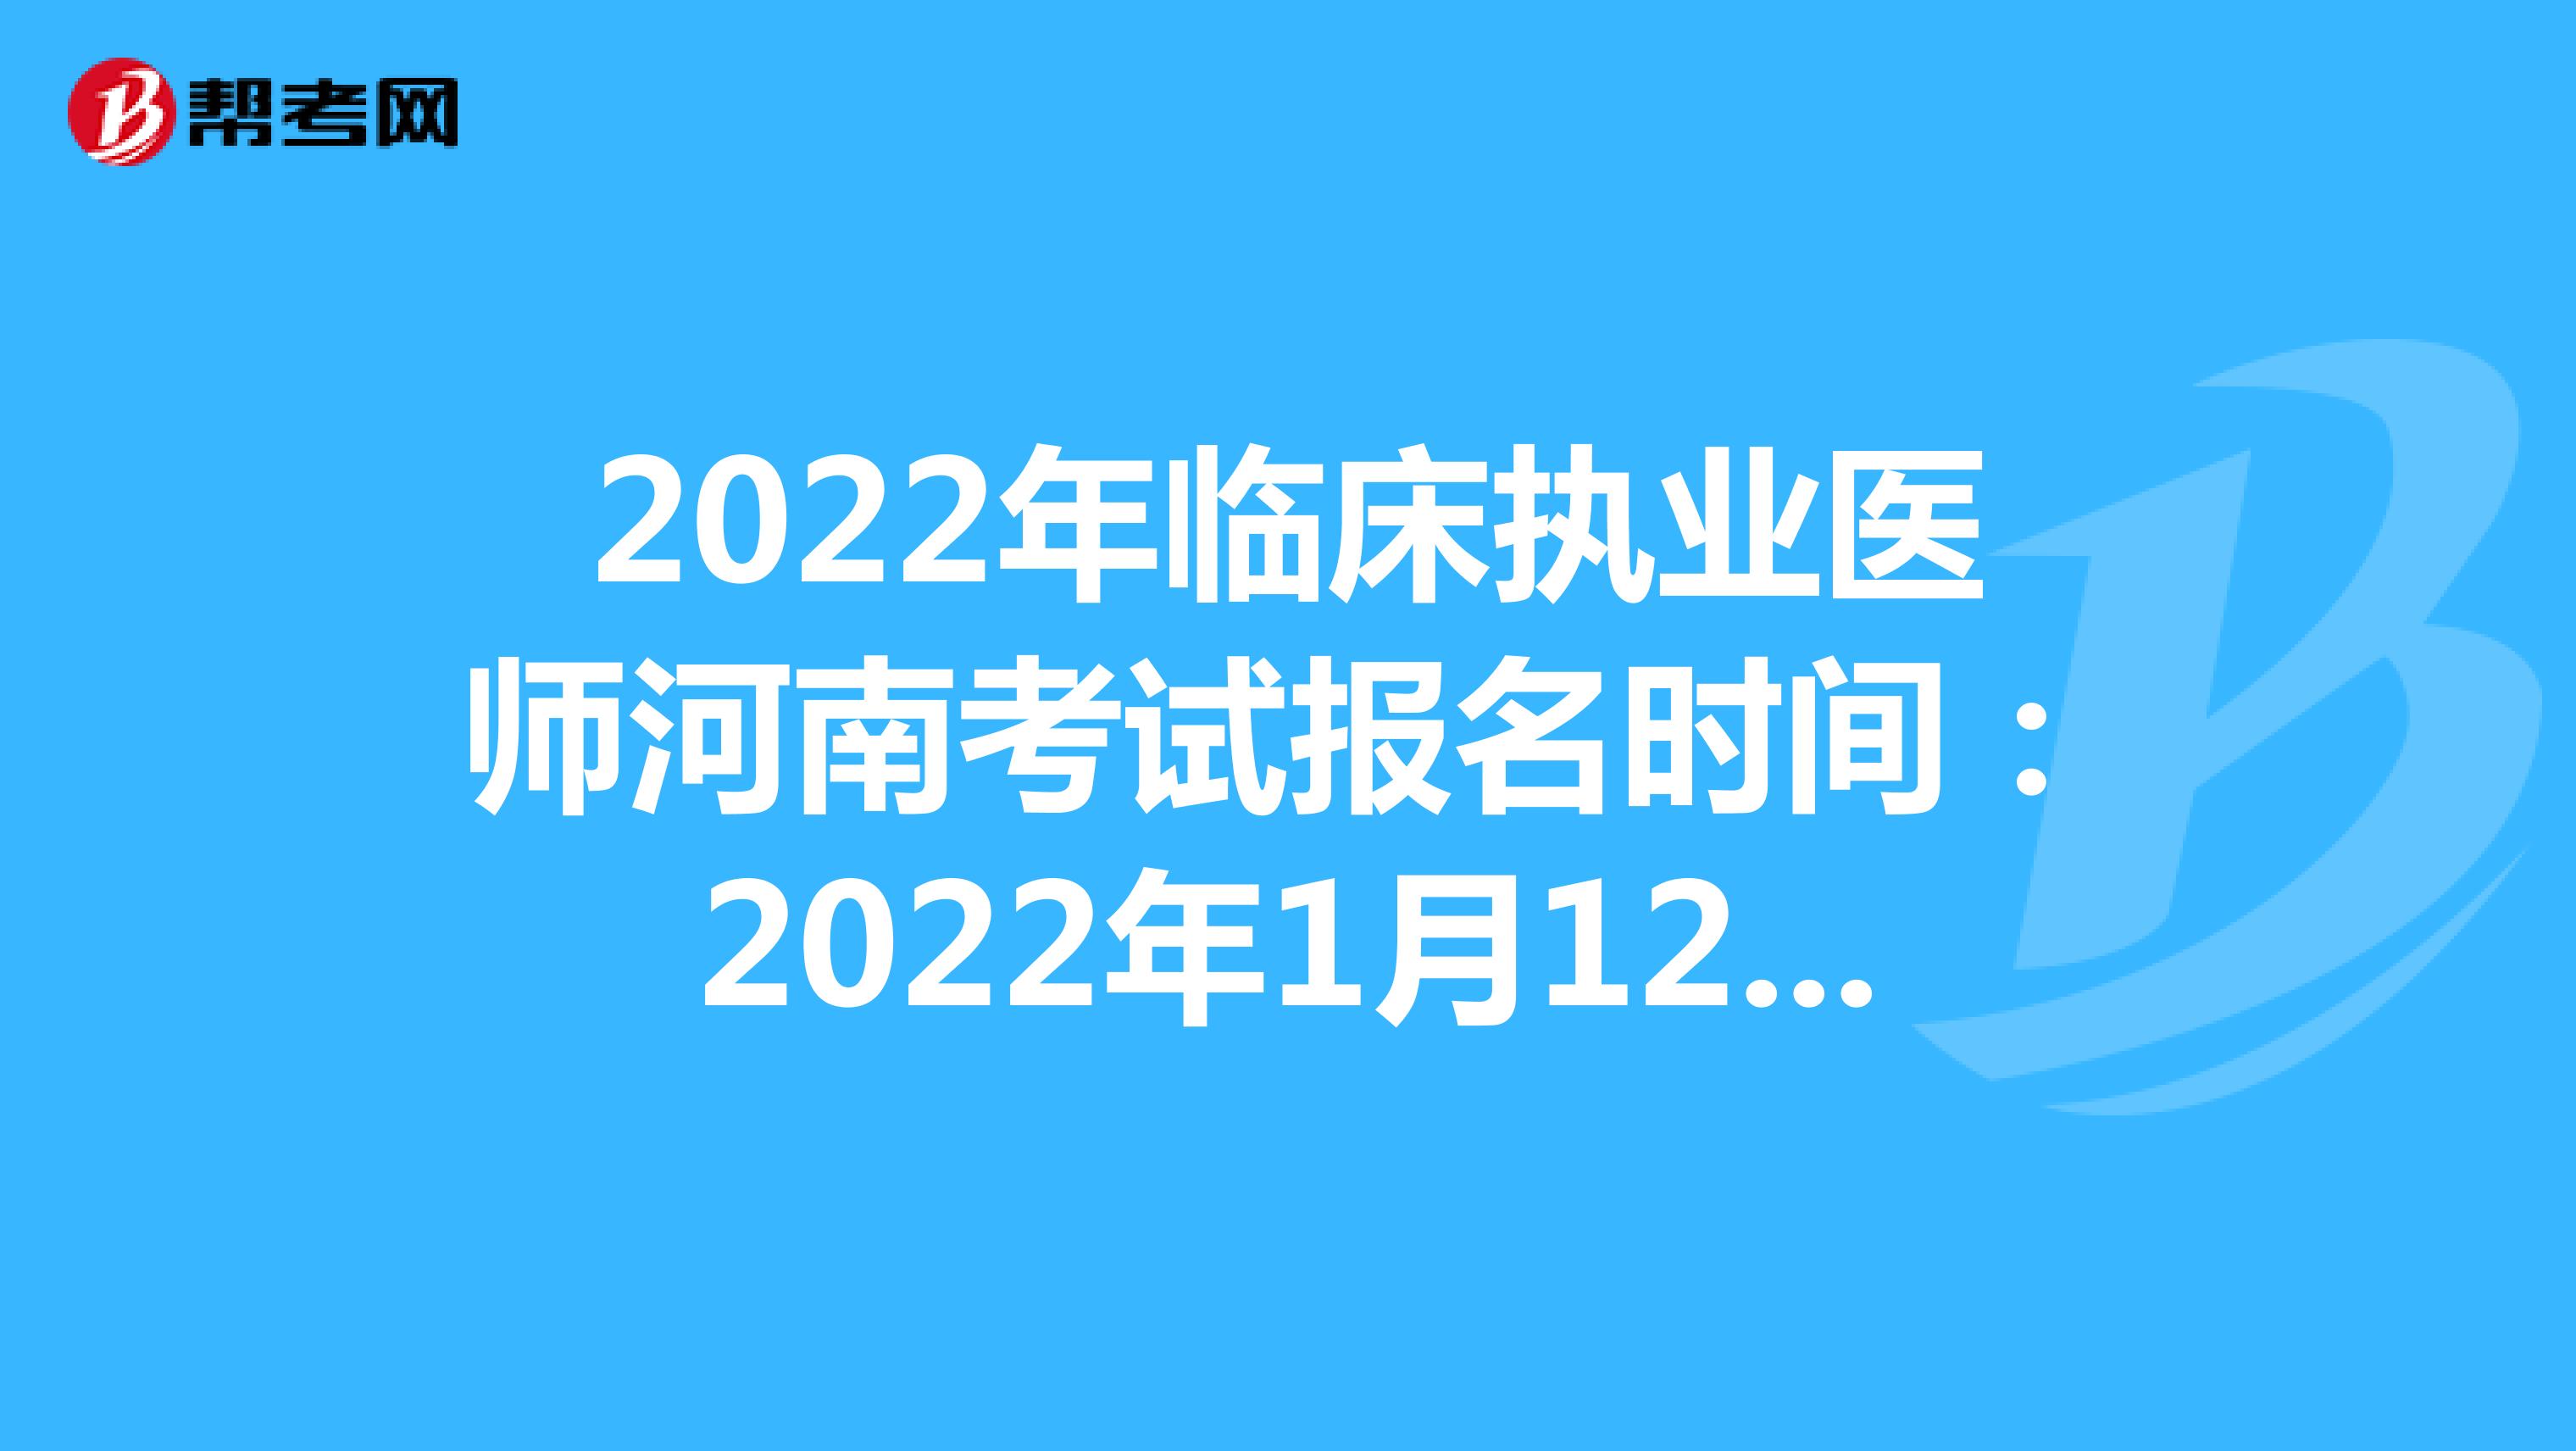 2022年临床执业医师河南考试报名时间：2022年1月12日至1月25日